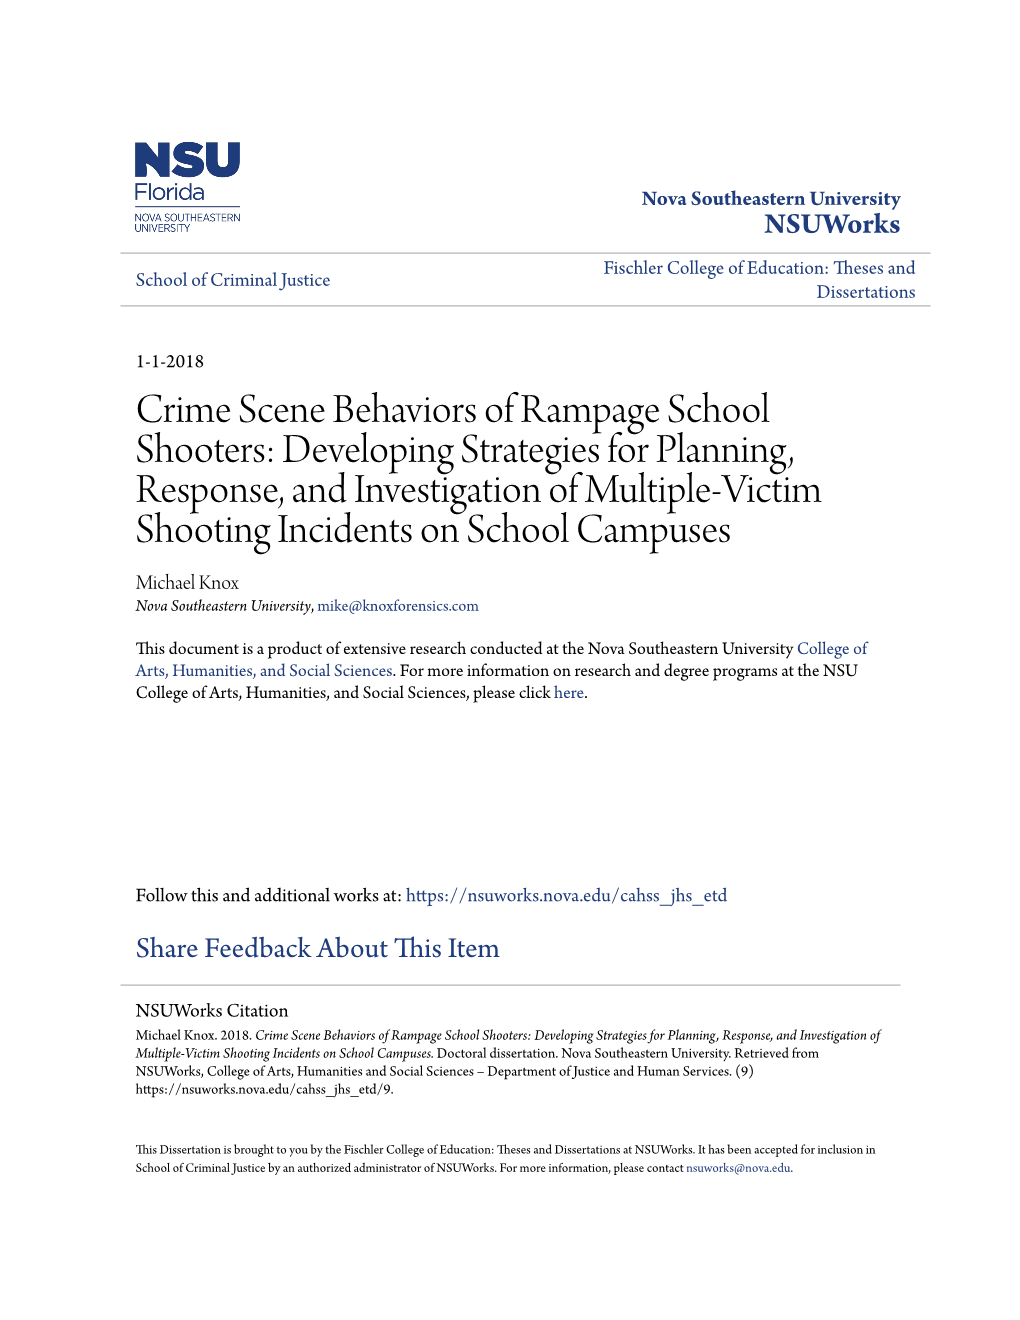 Crime Scene Behaviors of Rampage School Shooters